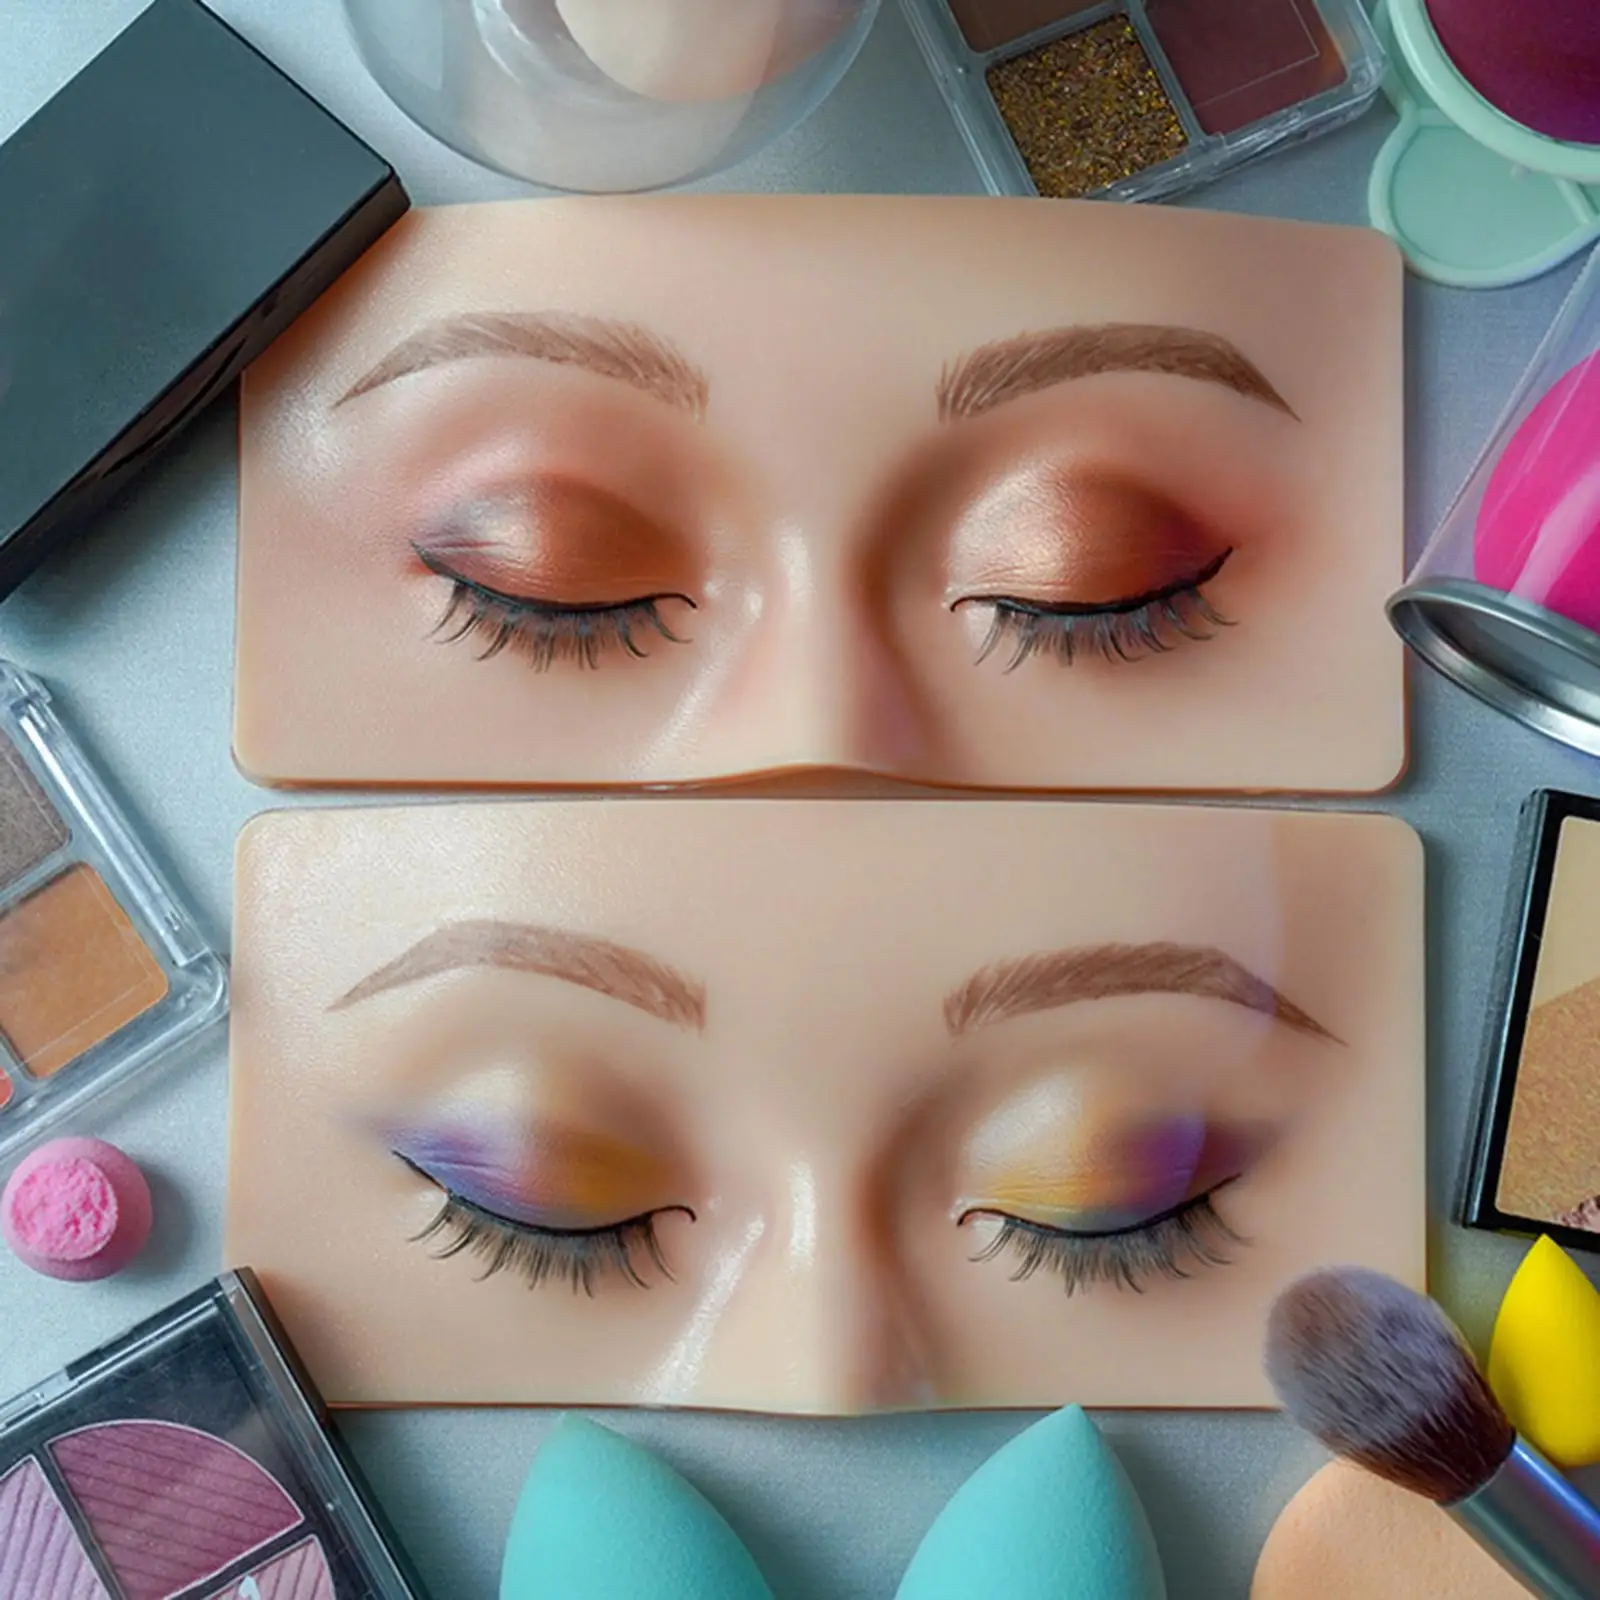 3D Realistic Pad Makeup Practice board, Reusable Practicing Makeup make up Practice Board for Beginners Makeup Artists